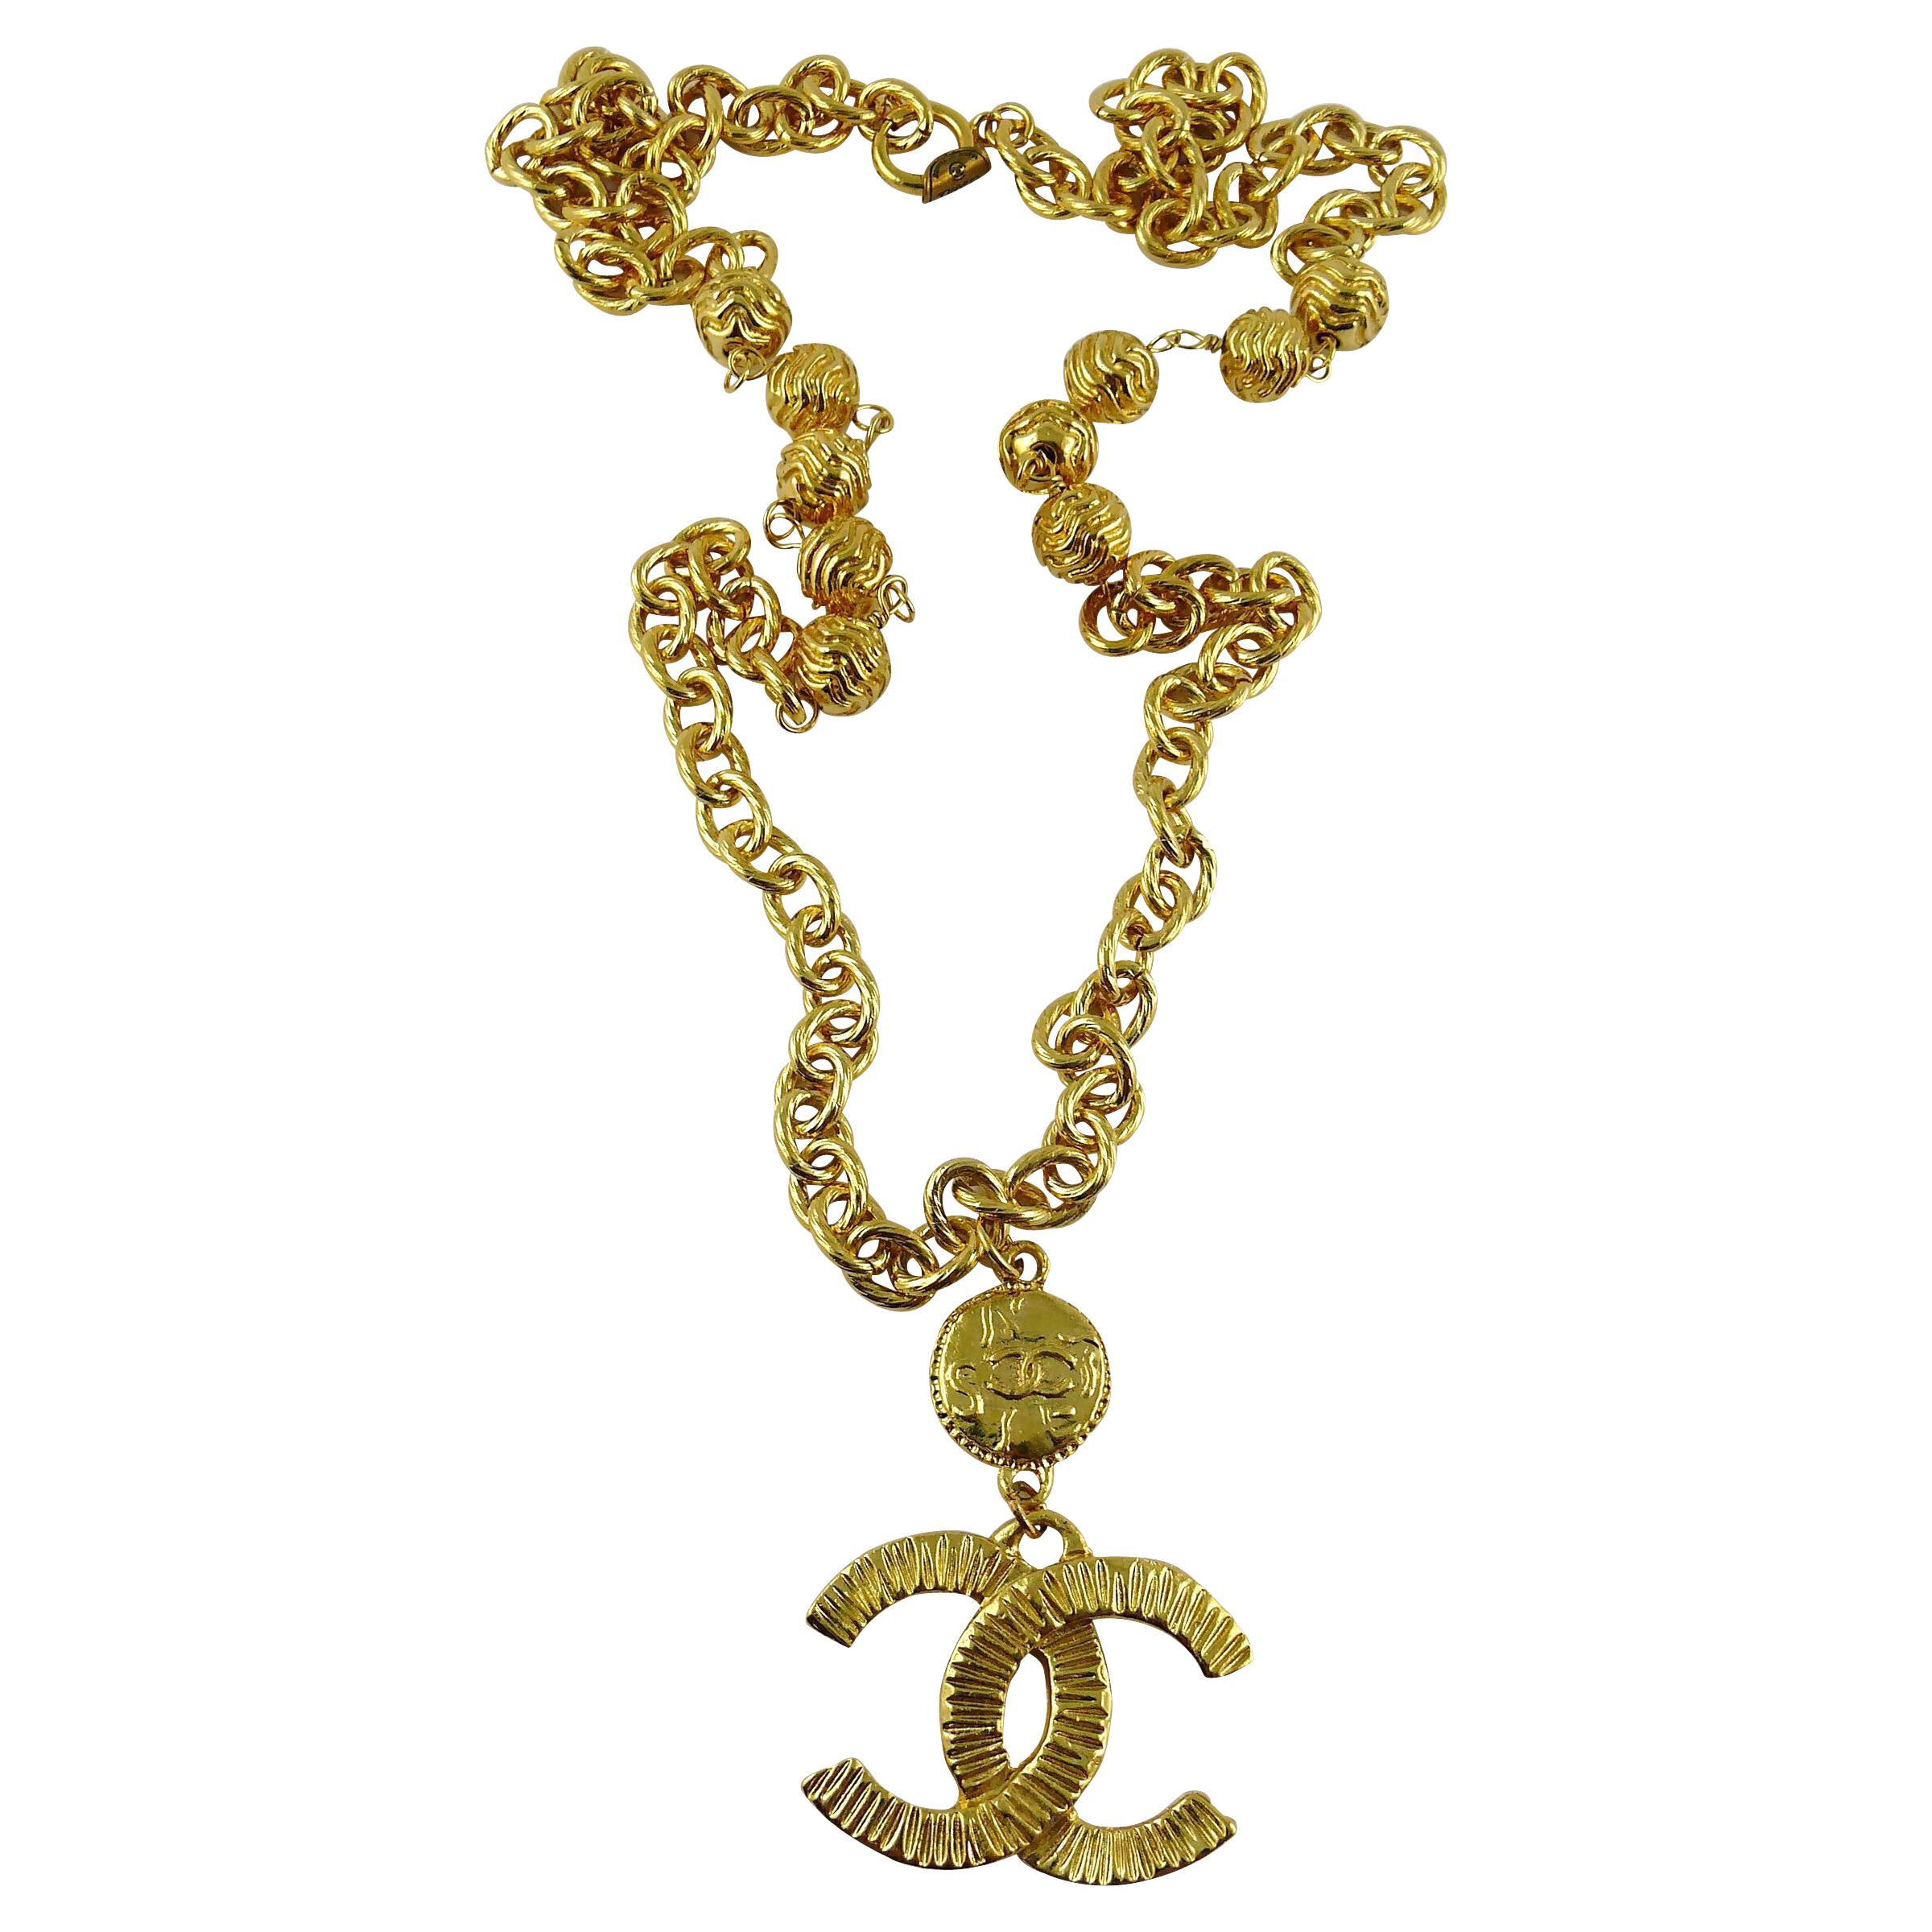 Vintage Chanel Gold Pendant - 226 For Sale on 1stDibs  chanel pendant gold,  gold chanel necklace, chanel necklace gold